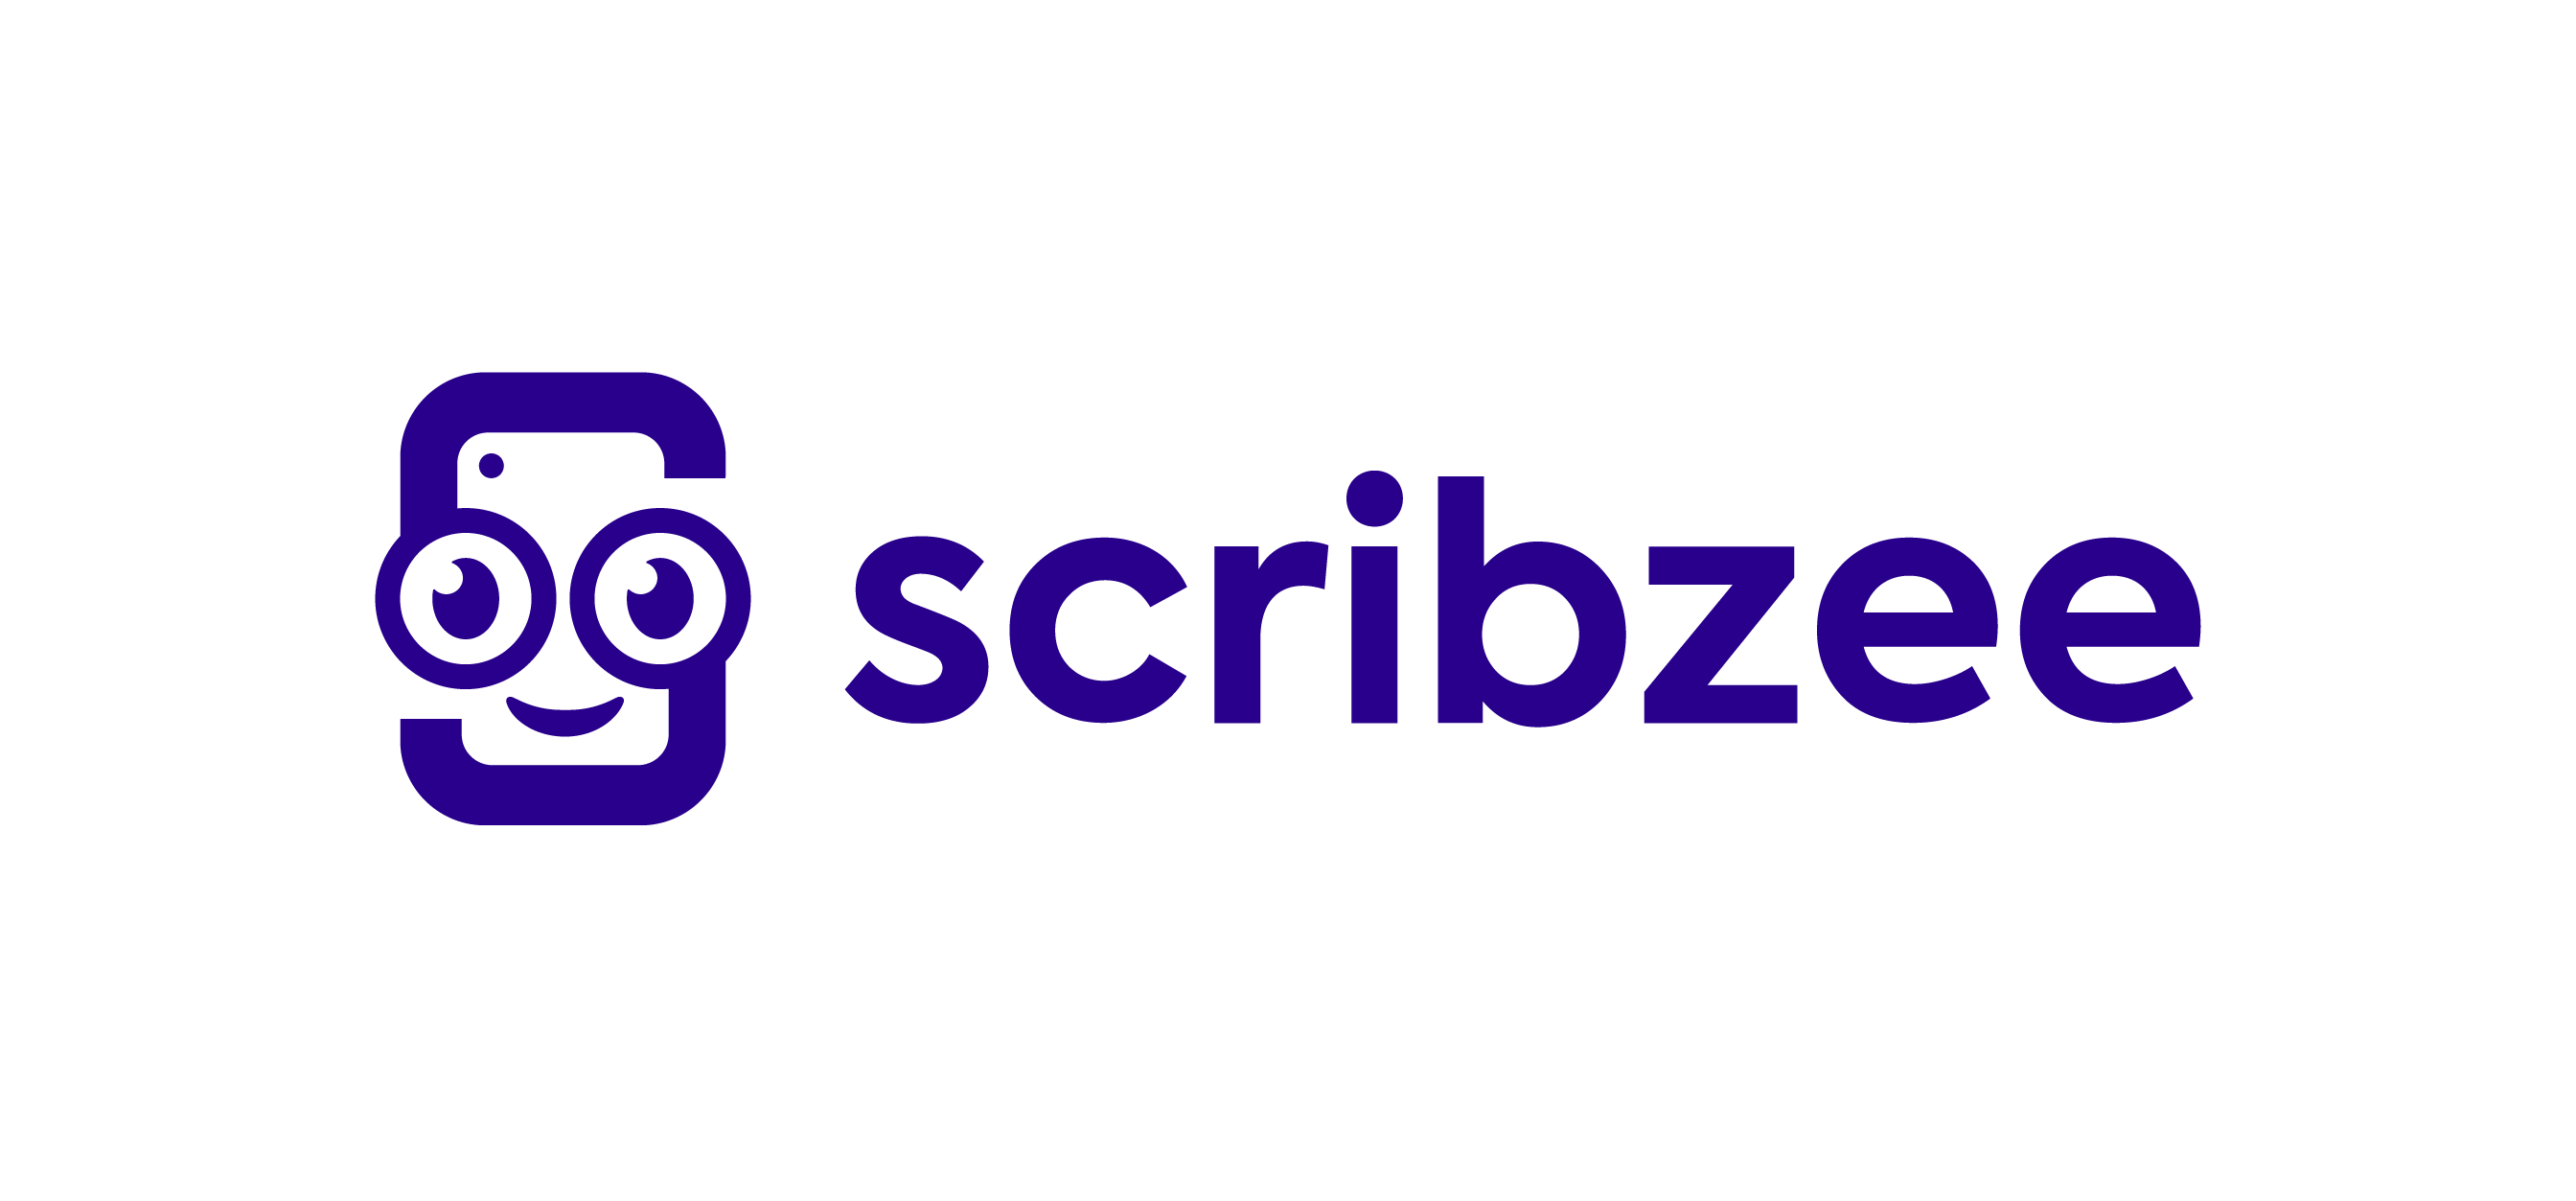 Free App Scribzee logo